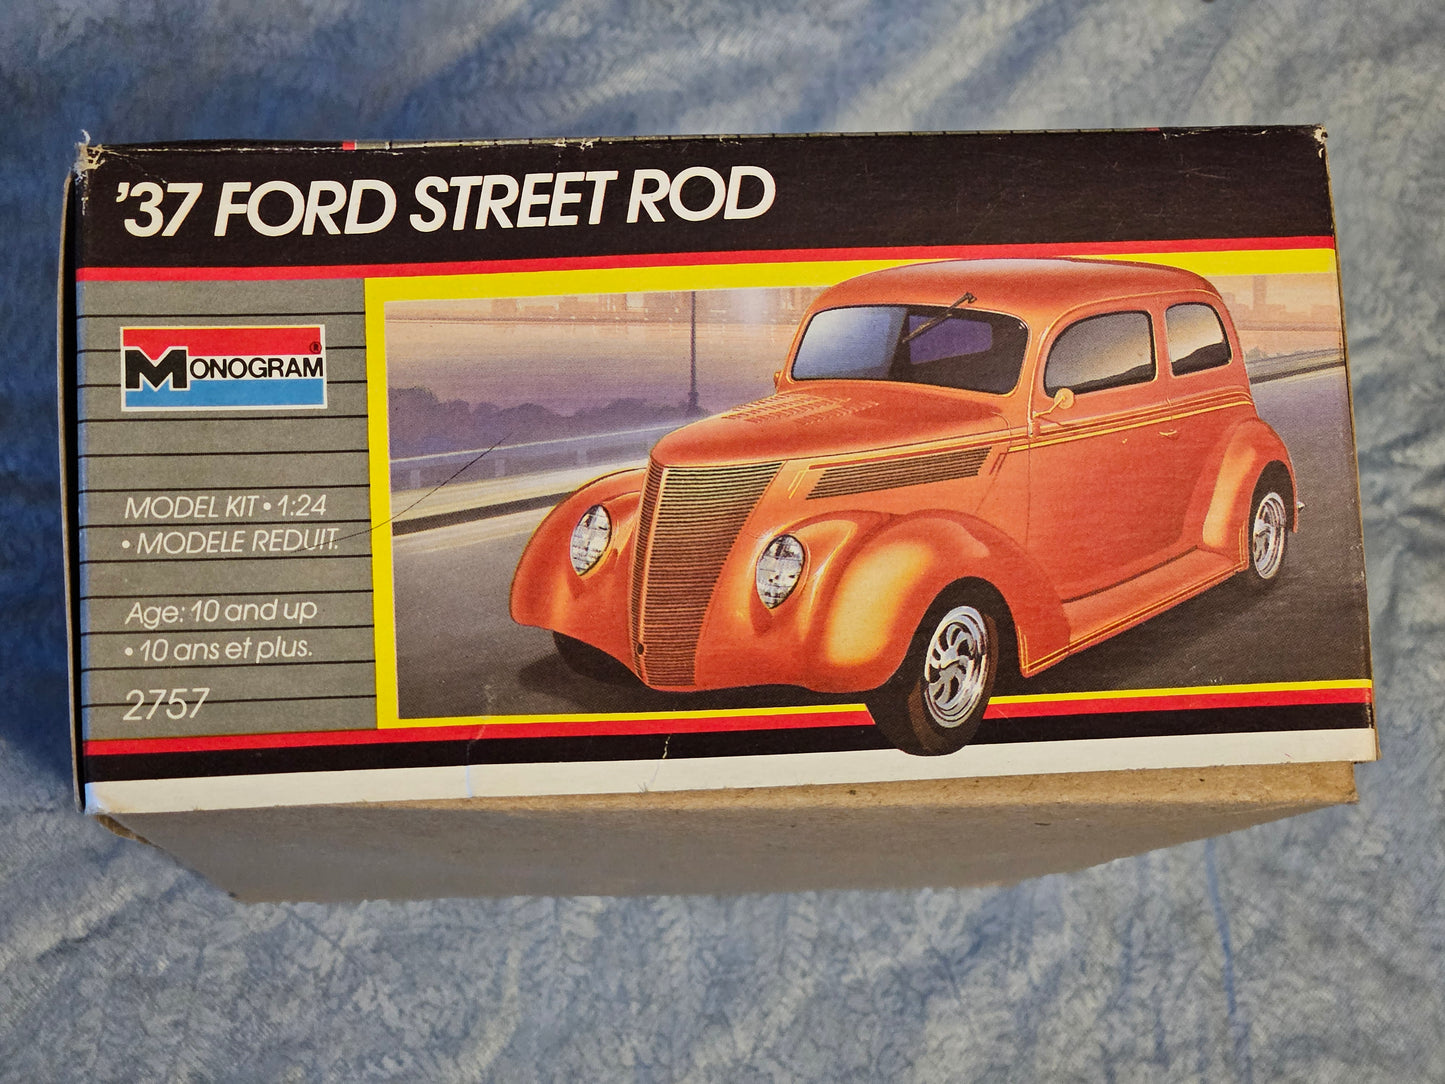 1937 Ford Street Rod Monogram #2757 1:24 Open Box Model Kit